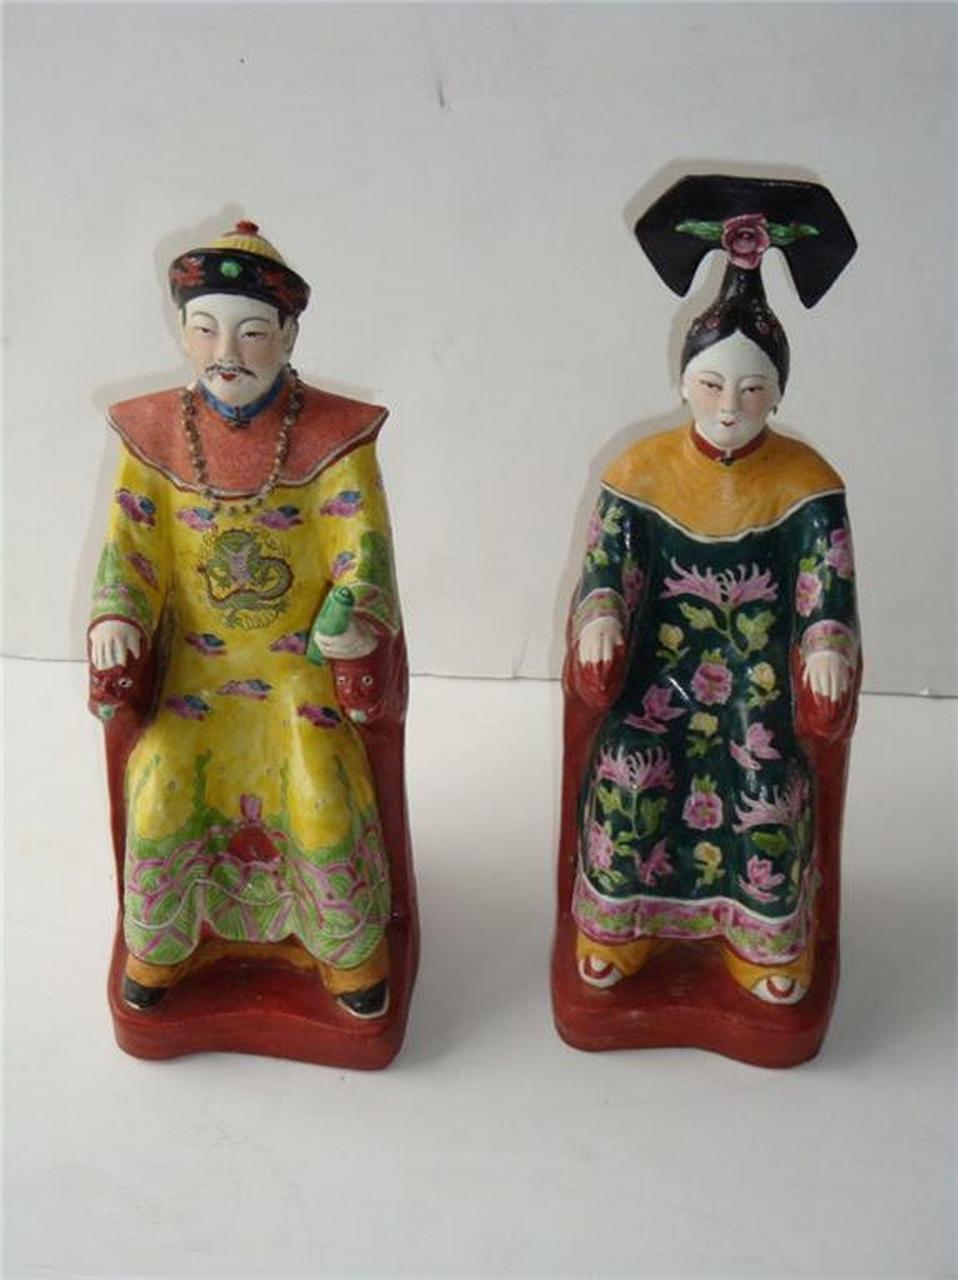 Der folgende Artikel, den wir anbieten, ist ein seltenes Paar aus chinesischem Porzellan, das einen sitzenden Kaiser und eine Kaiserin darstellt. Handbemalt wunderschön mit Outstanding Detail und schöne Array von Farben auf jeder Figur. Perfekt für